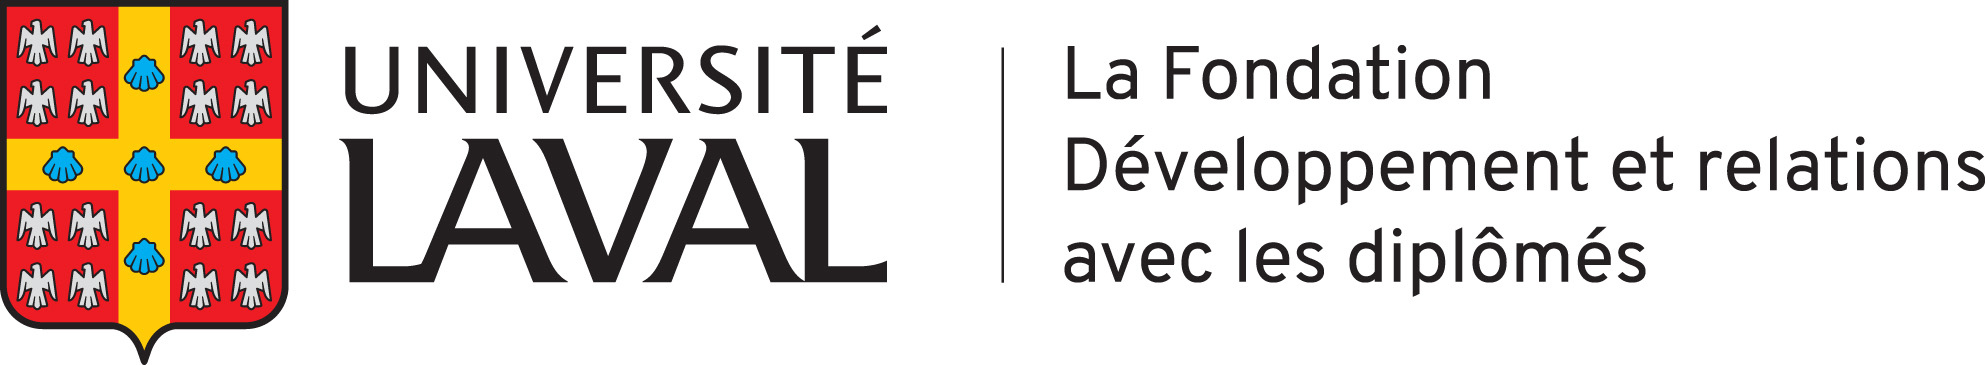 La Fondation de l'Université Laval